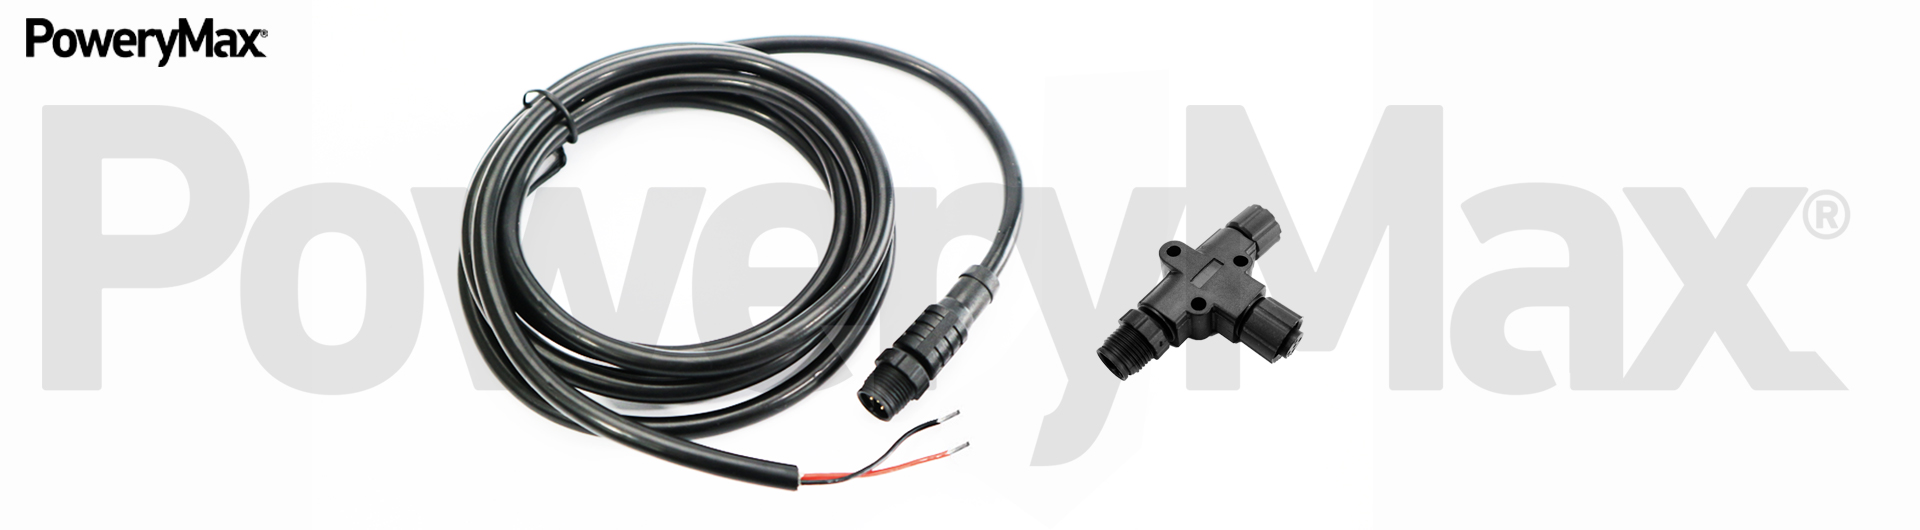 Cable de alimentación PoweryMax. ONNautic